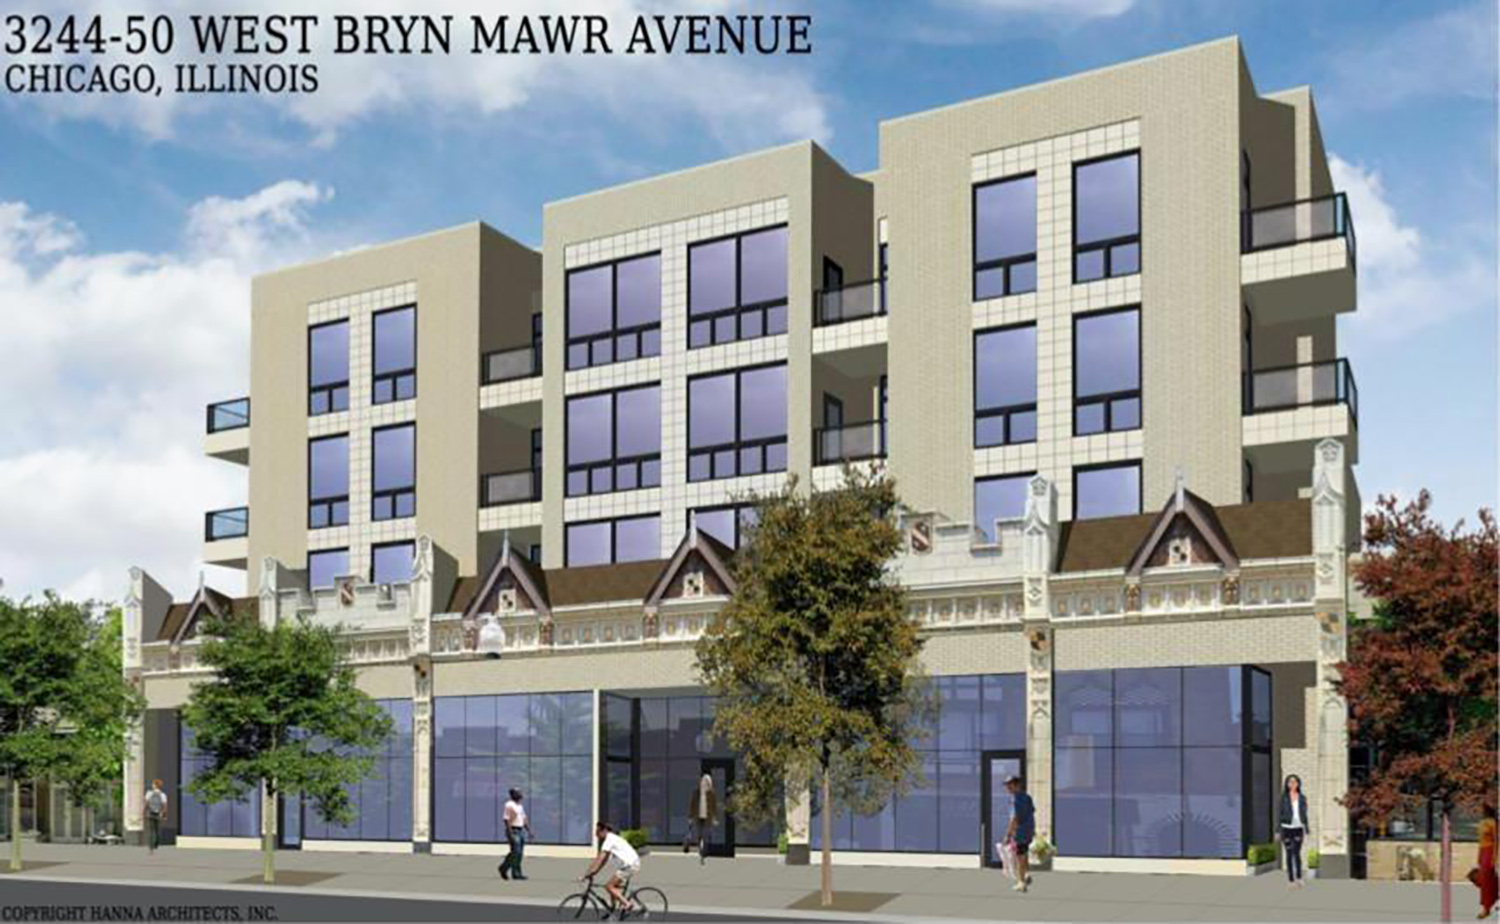 3244 W Bryn Mawr Avenue. Rendering by Hanna Architects